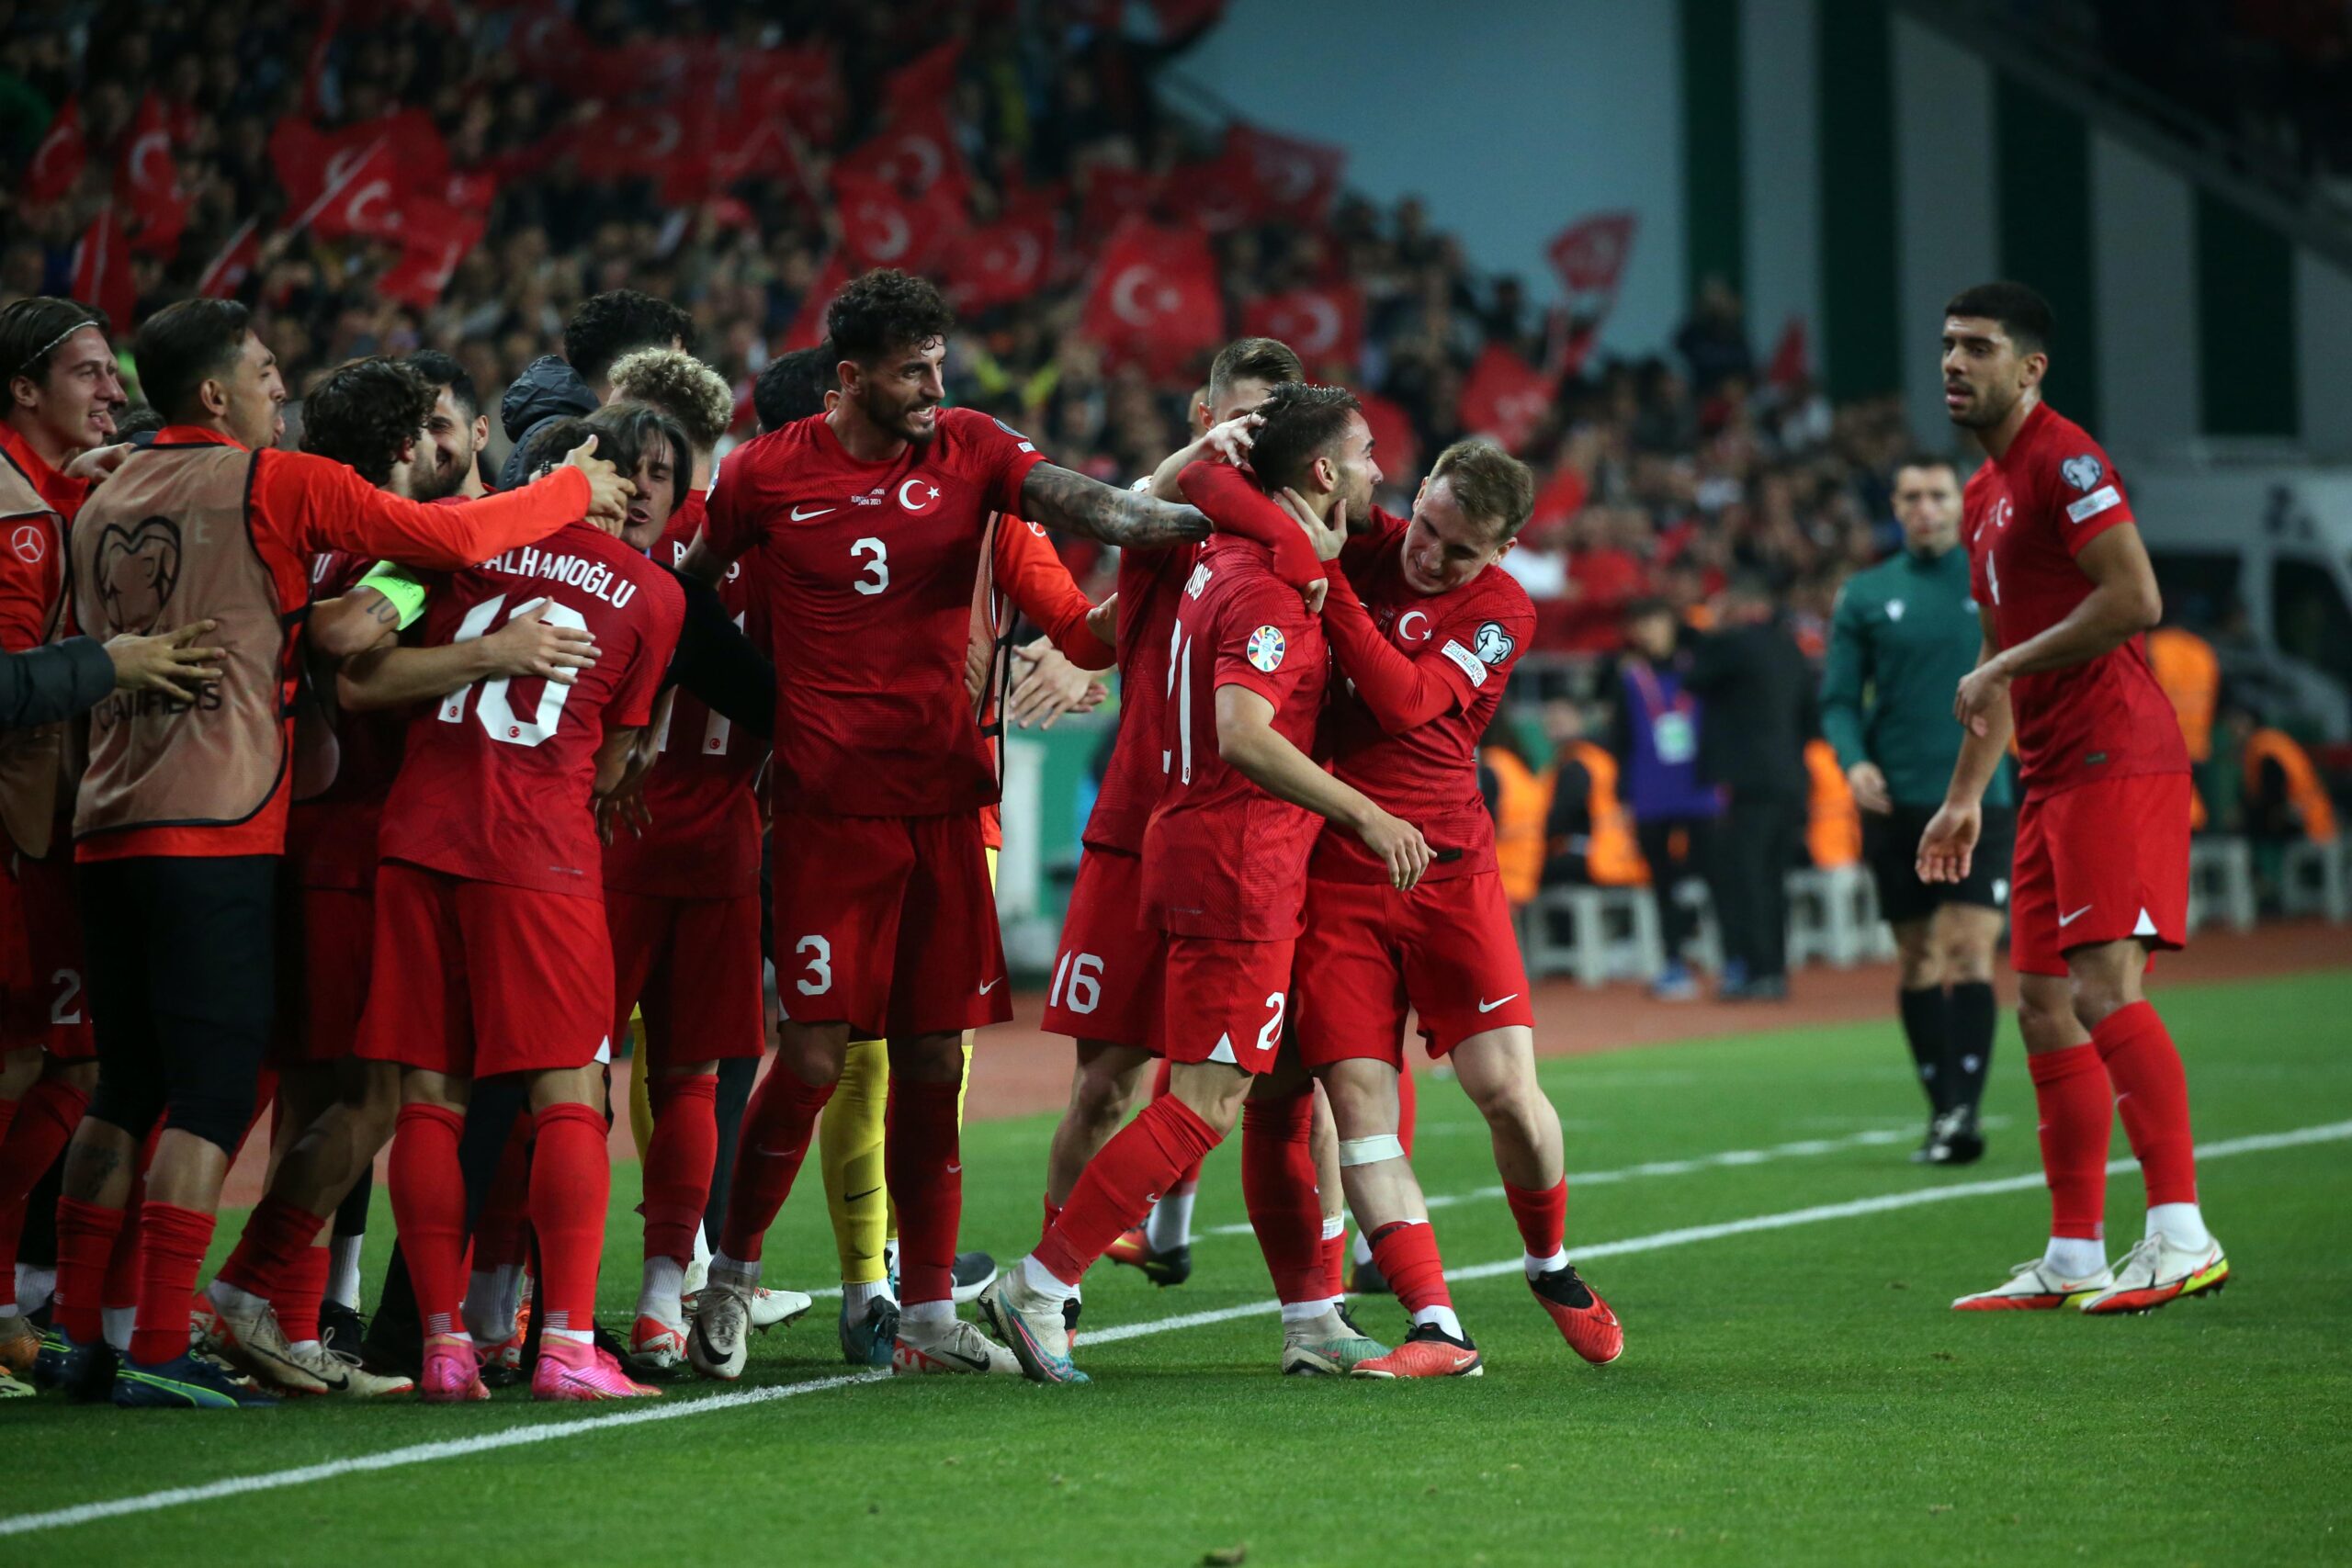 Türkiye A Milli Futbol Takımı, Euro 2024 biletini aldı